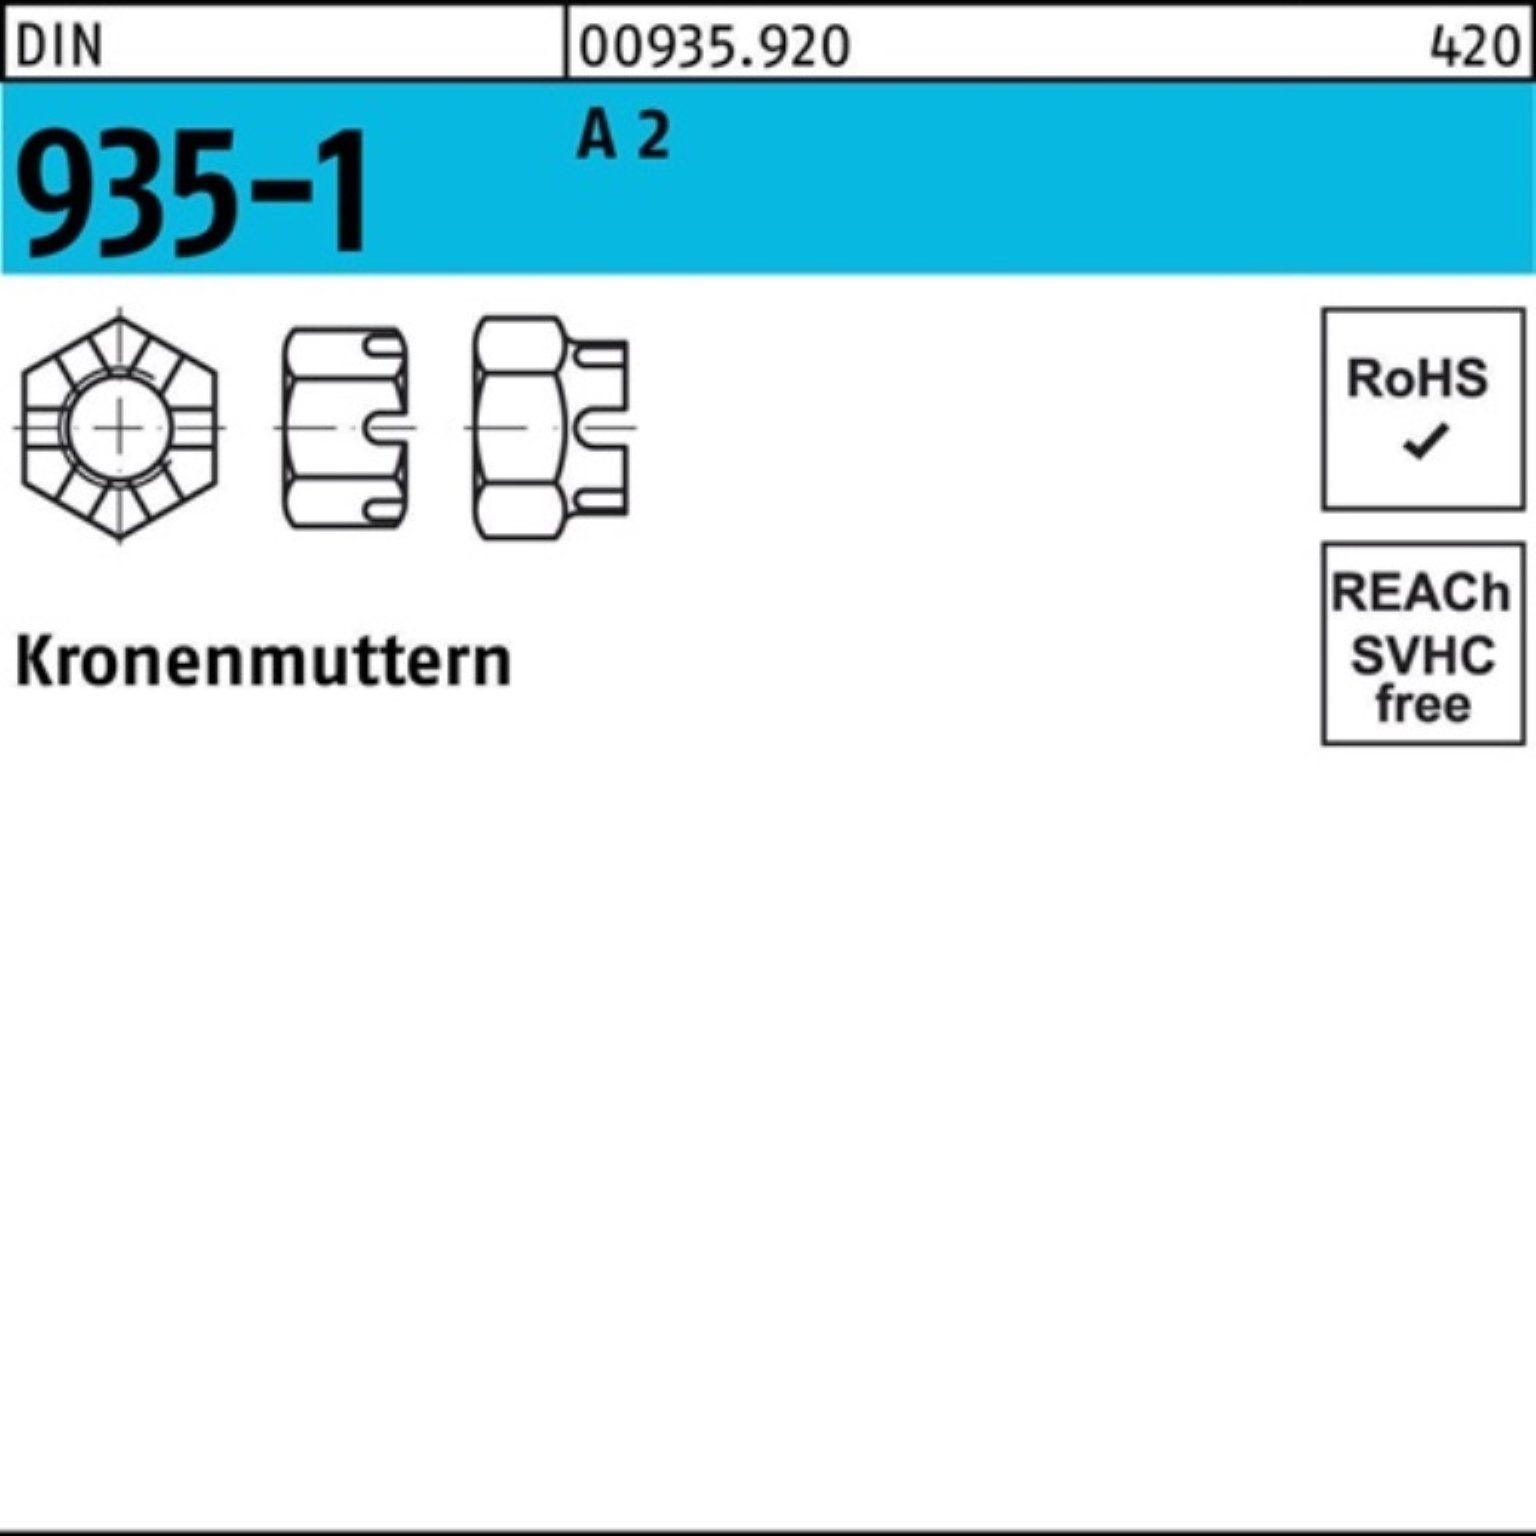 Reyher Kronenmutter 100er Pack Kronenmutter DIN 935-1 M20 A 2 1 Stück DIN 935-1 A 2 Krone | Muttern